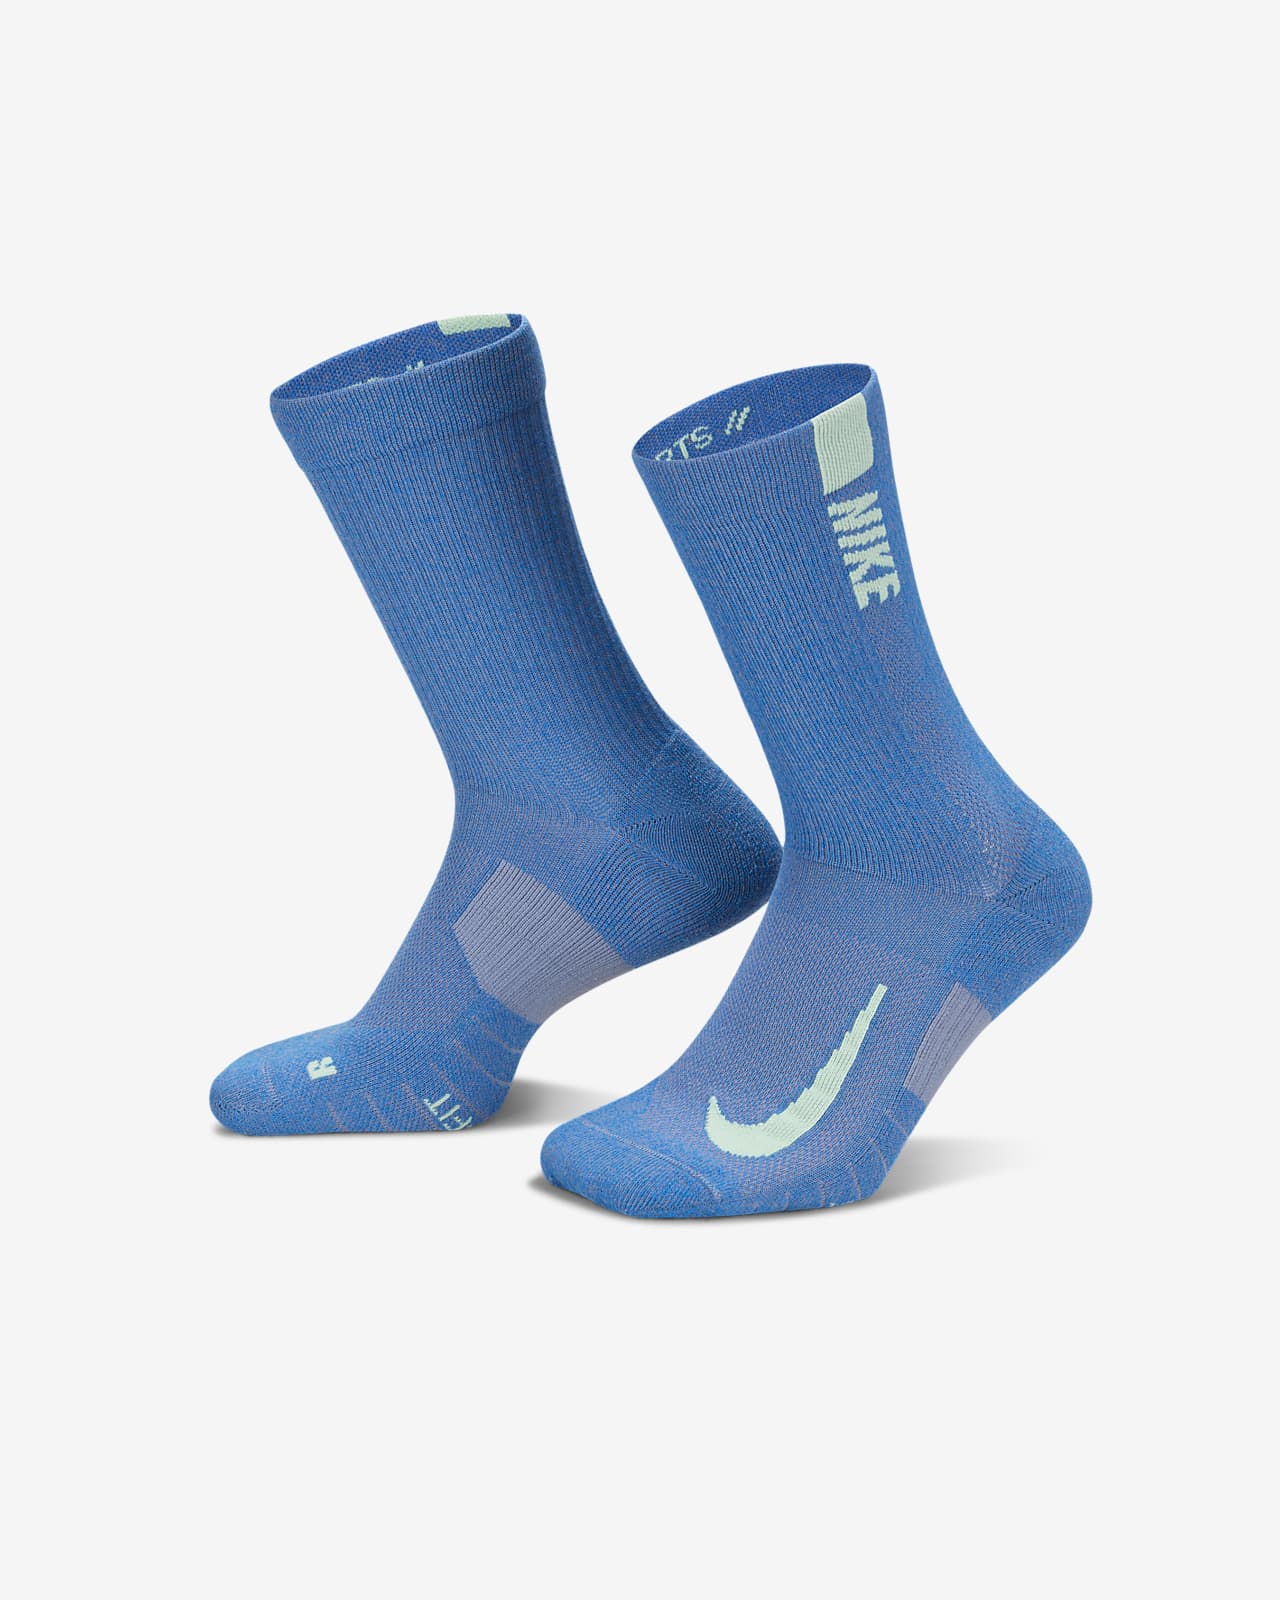 Vyšší ponožky Nike Multiplier (2 páry)